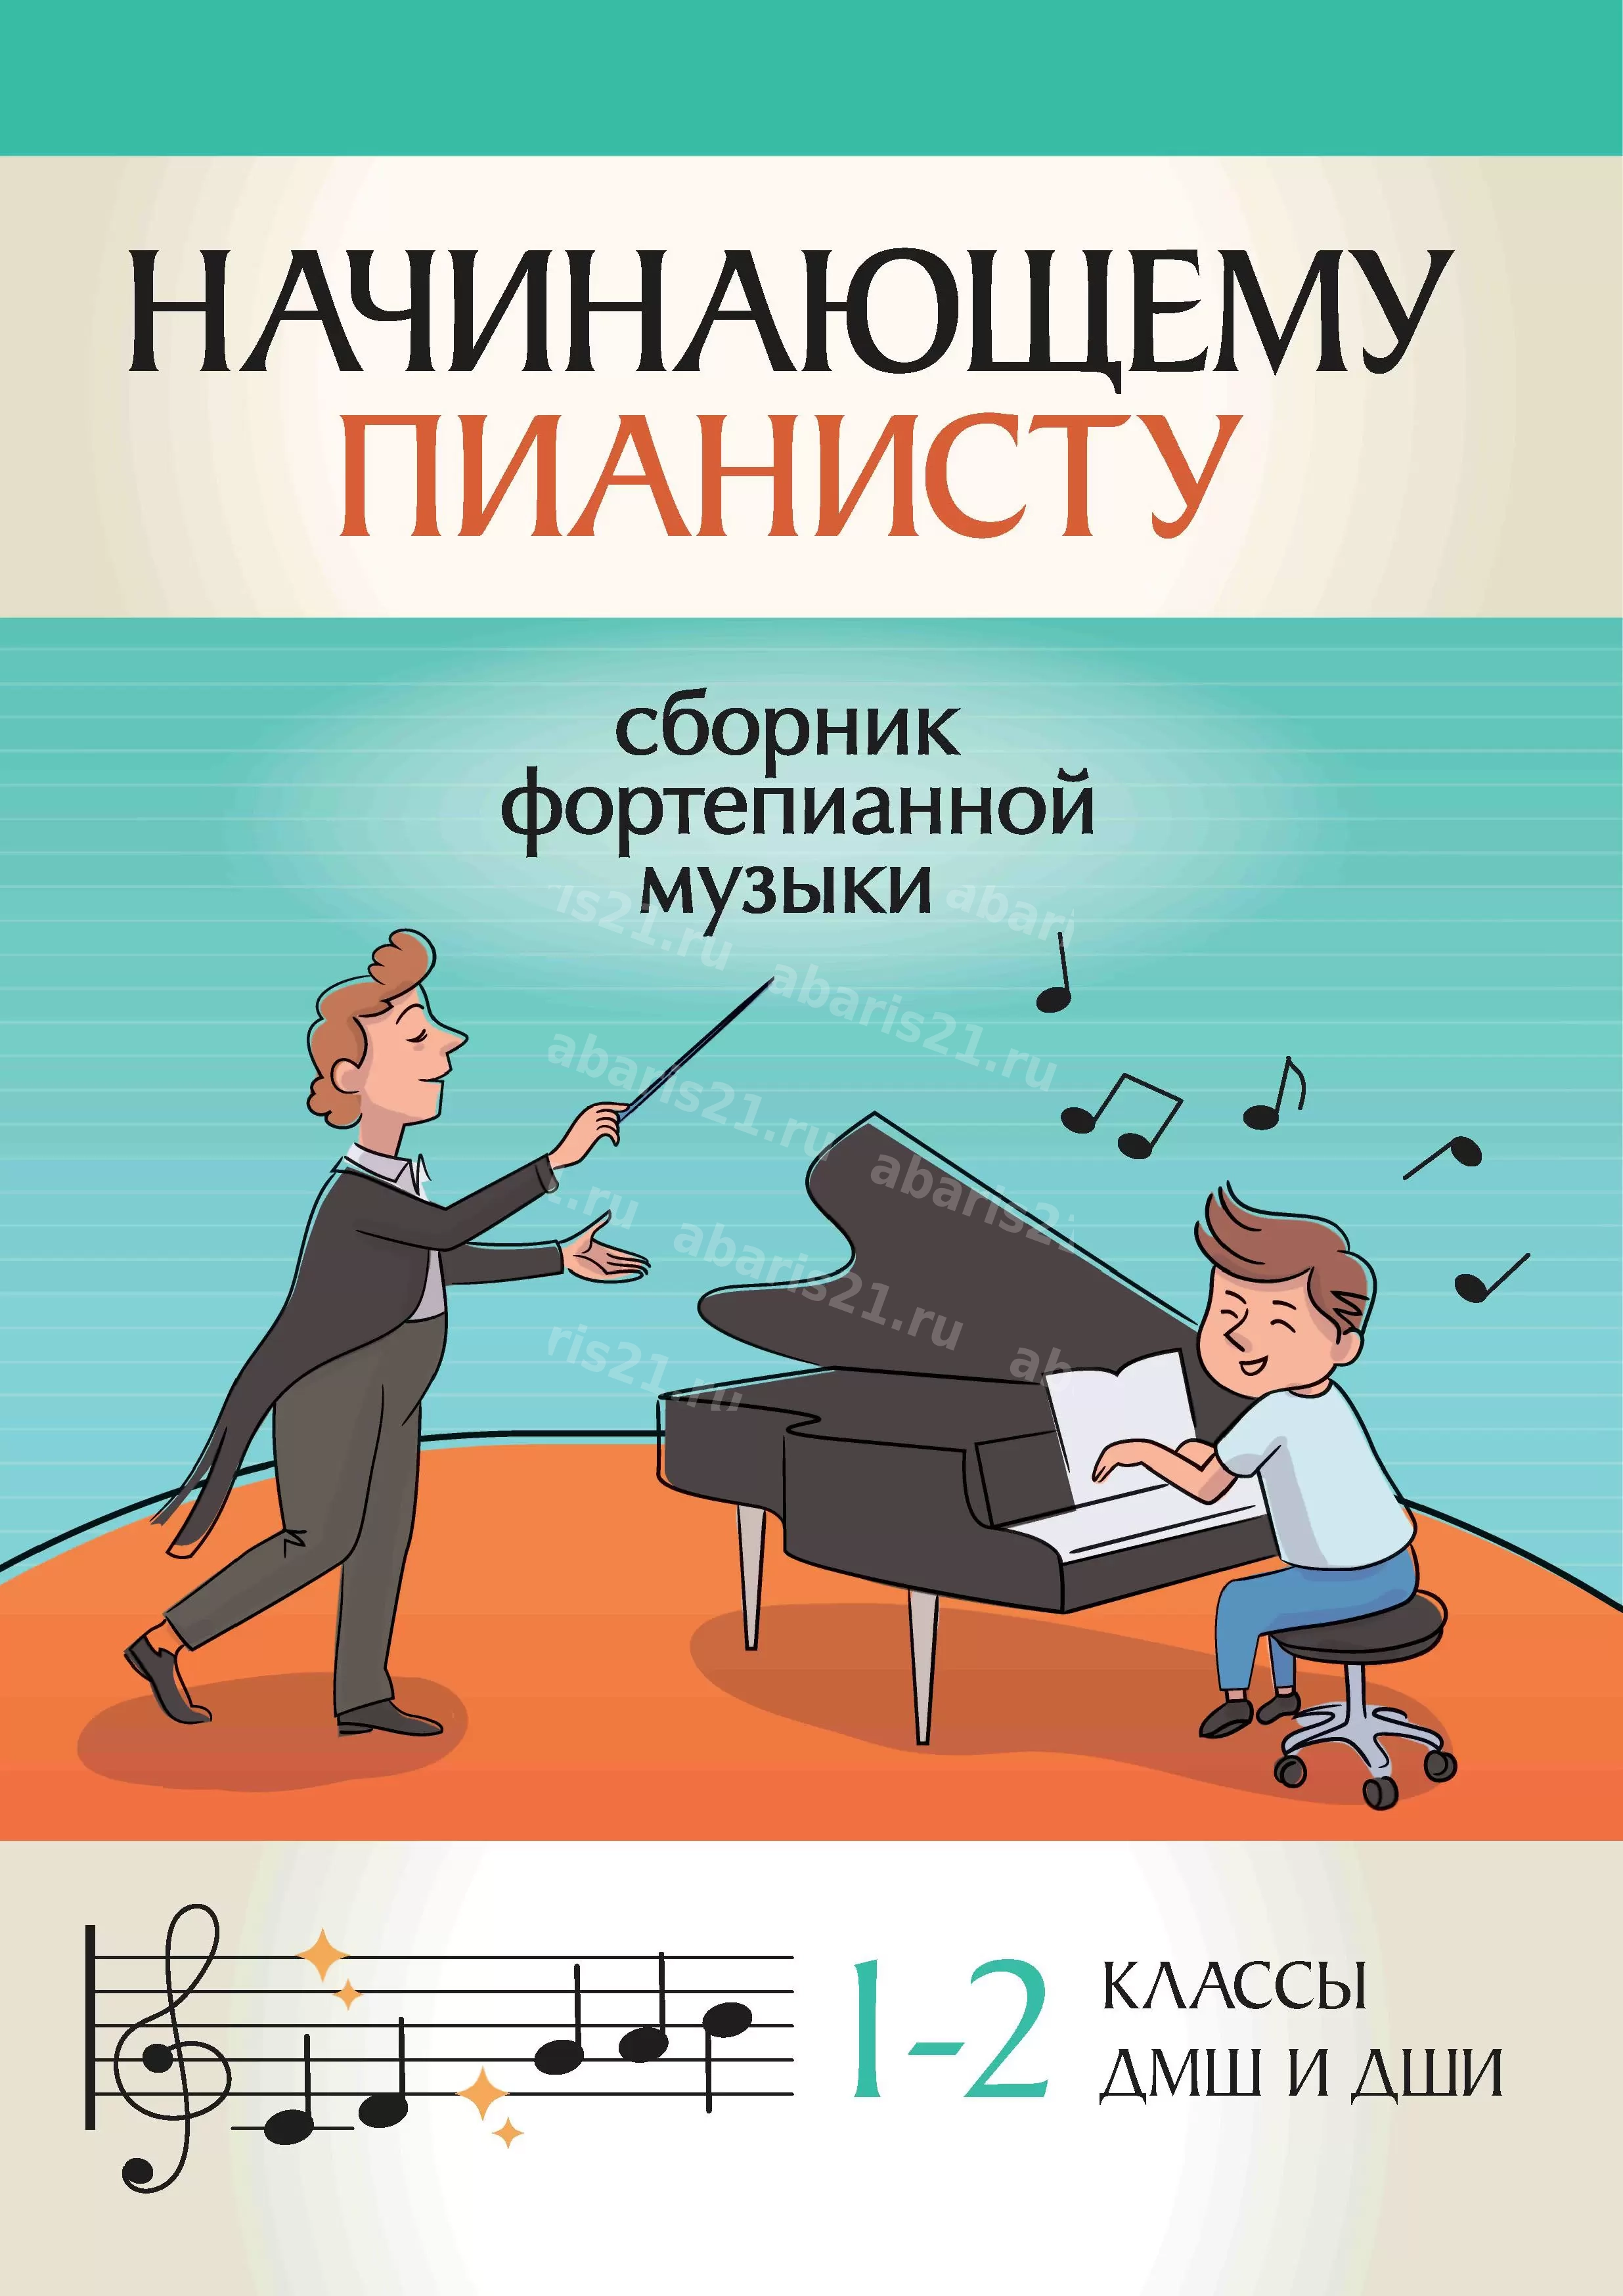 Начинающему пианисту: сборник фортепианной музыки: 1-2 классы детских музыкальных школ и детских школ искусств